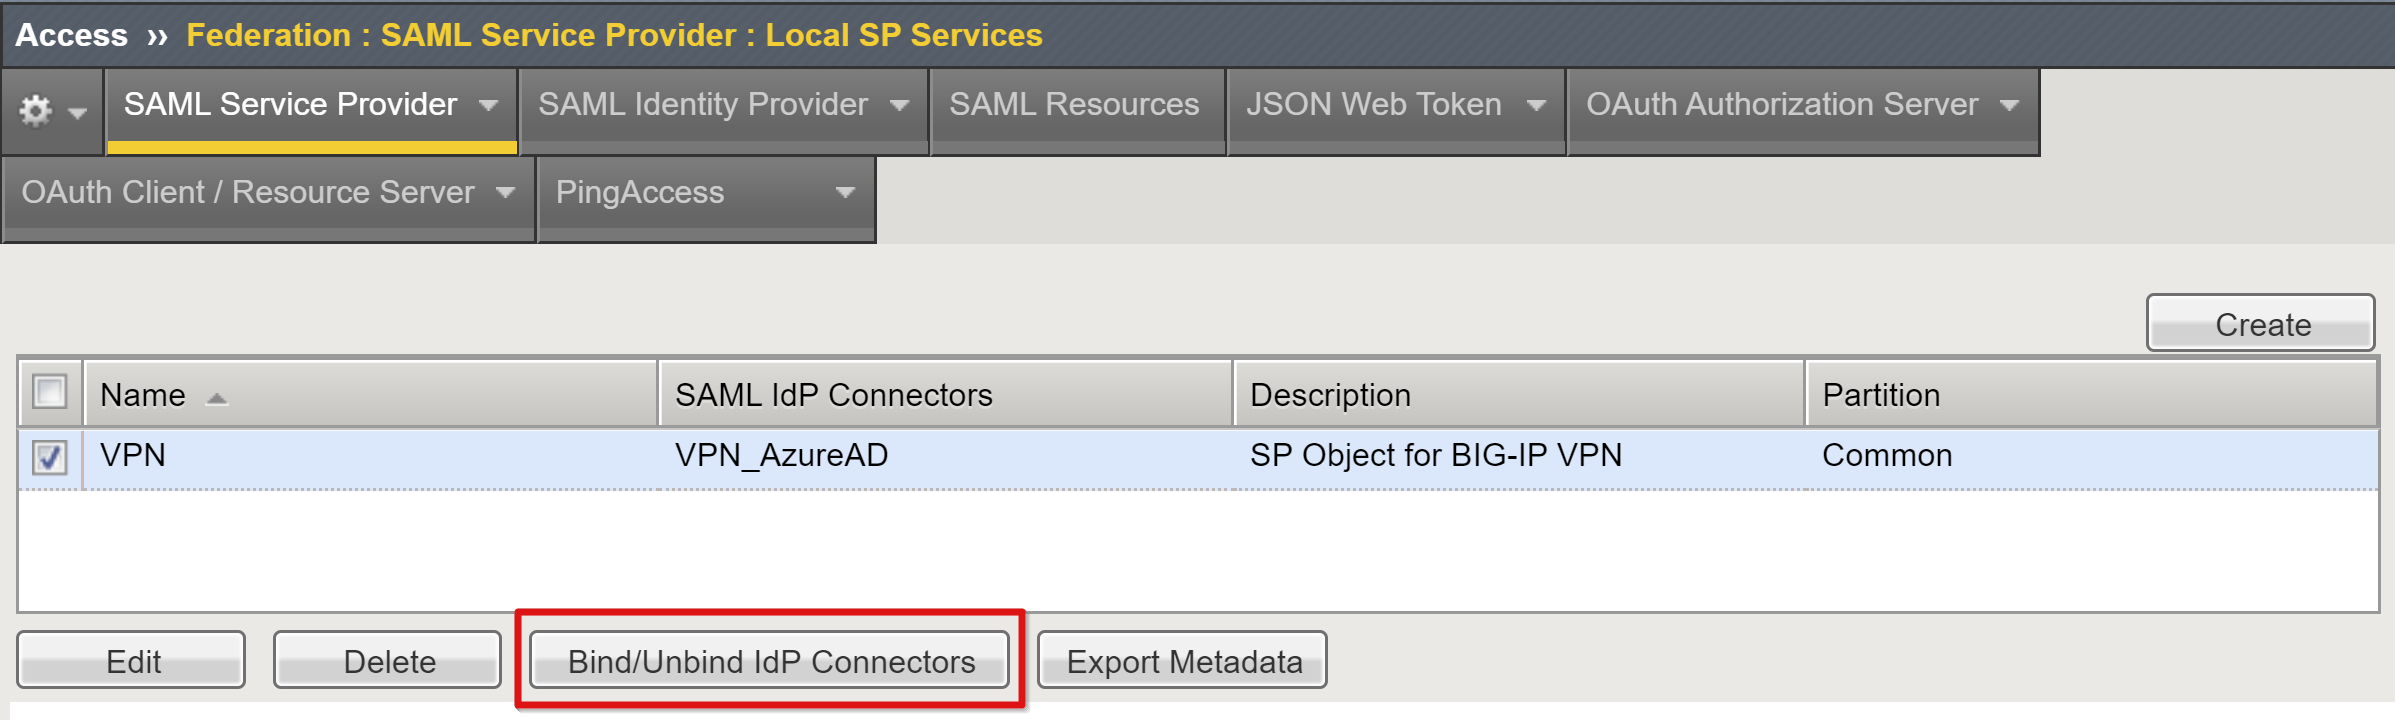 Schermopname van de optie Binding unbind IDP Connections op de pagina Local SP Services.